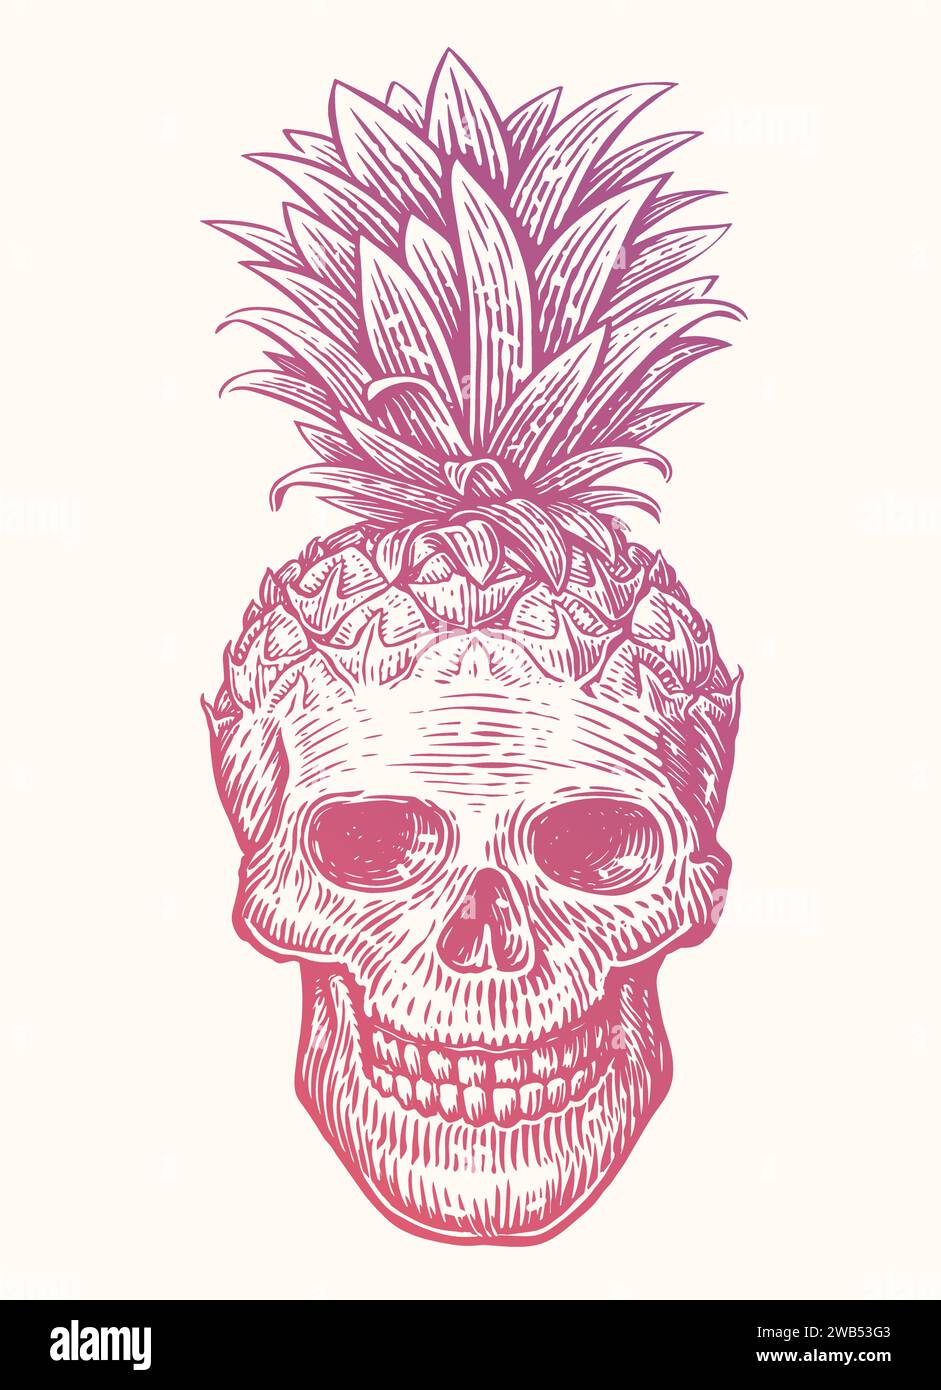 Ananas cranio umano, illustrazione vettoriale. Stampa creativa e divertente per t-shirt, poster, striscioni, tatuaggi Illustrazione Vettoriale